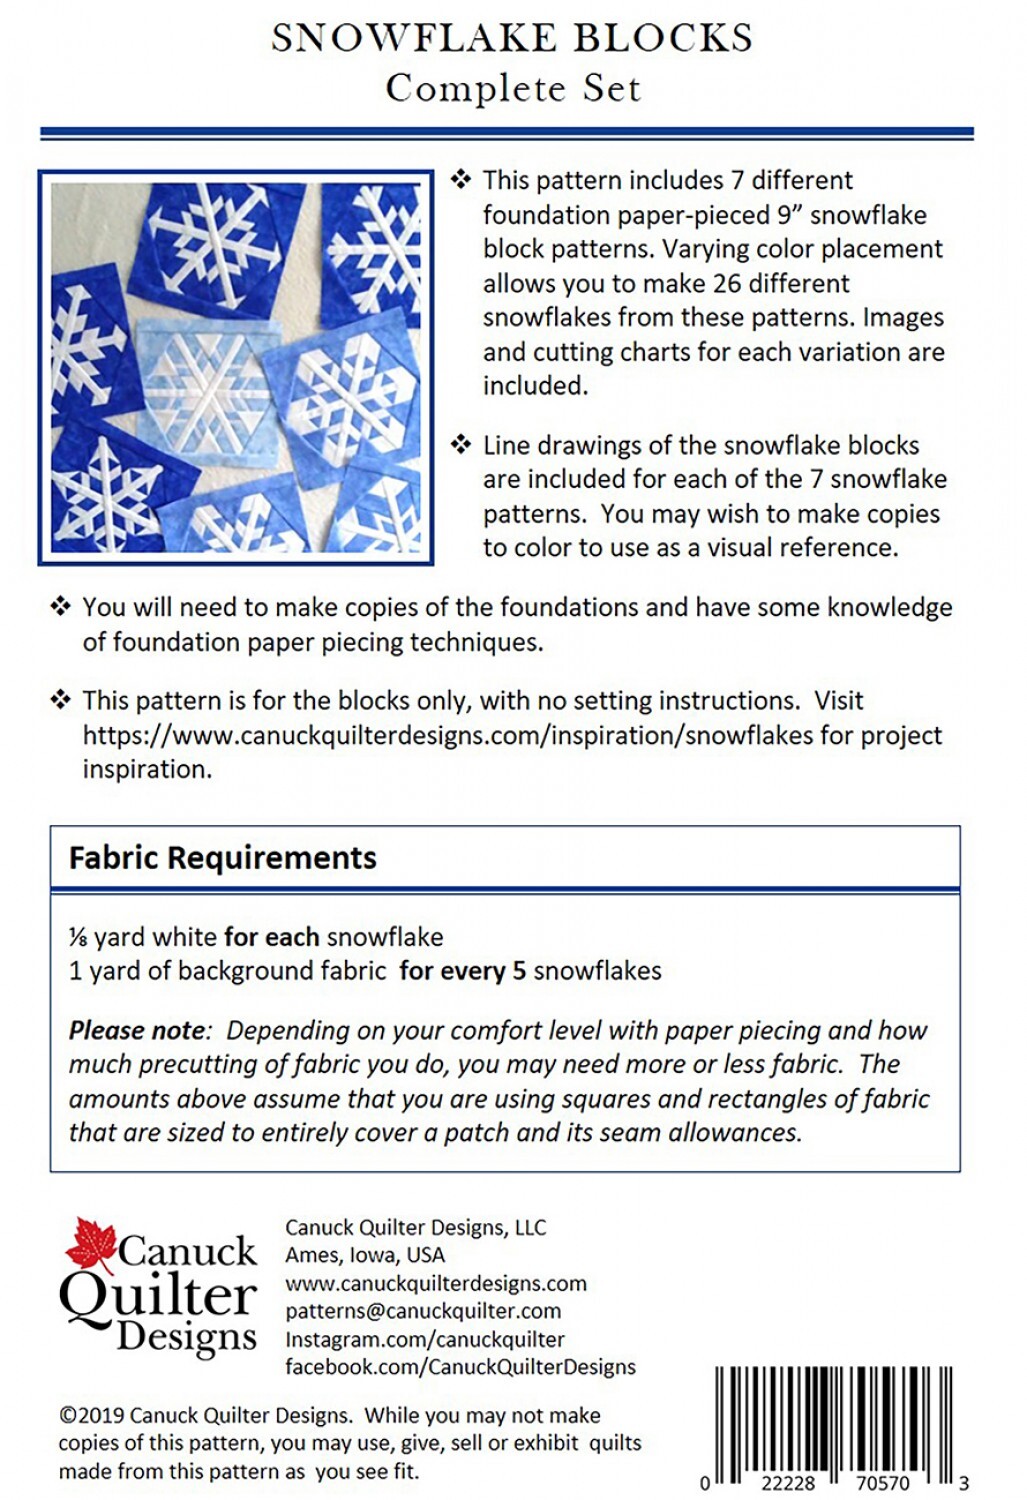 Snowflake Blocks Pattern